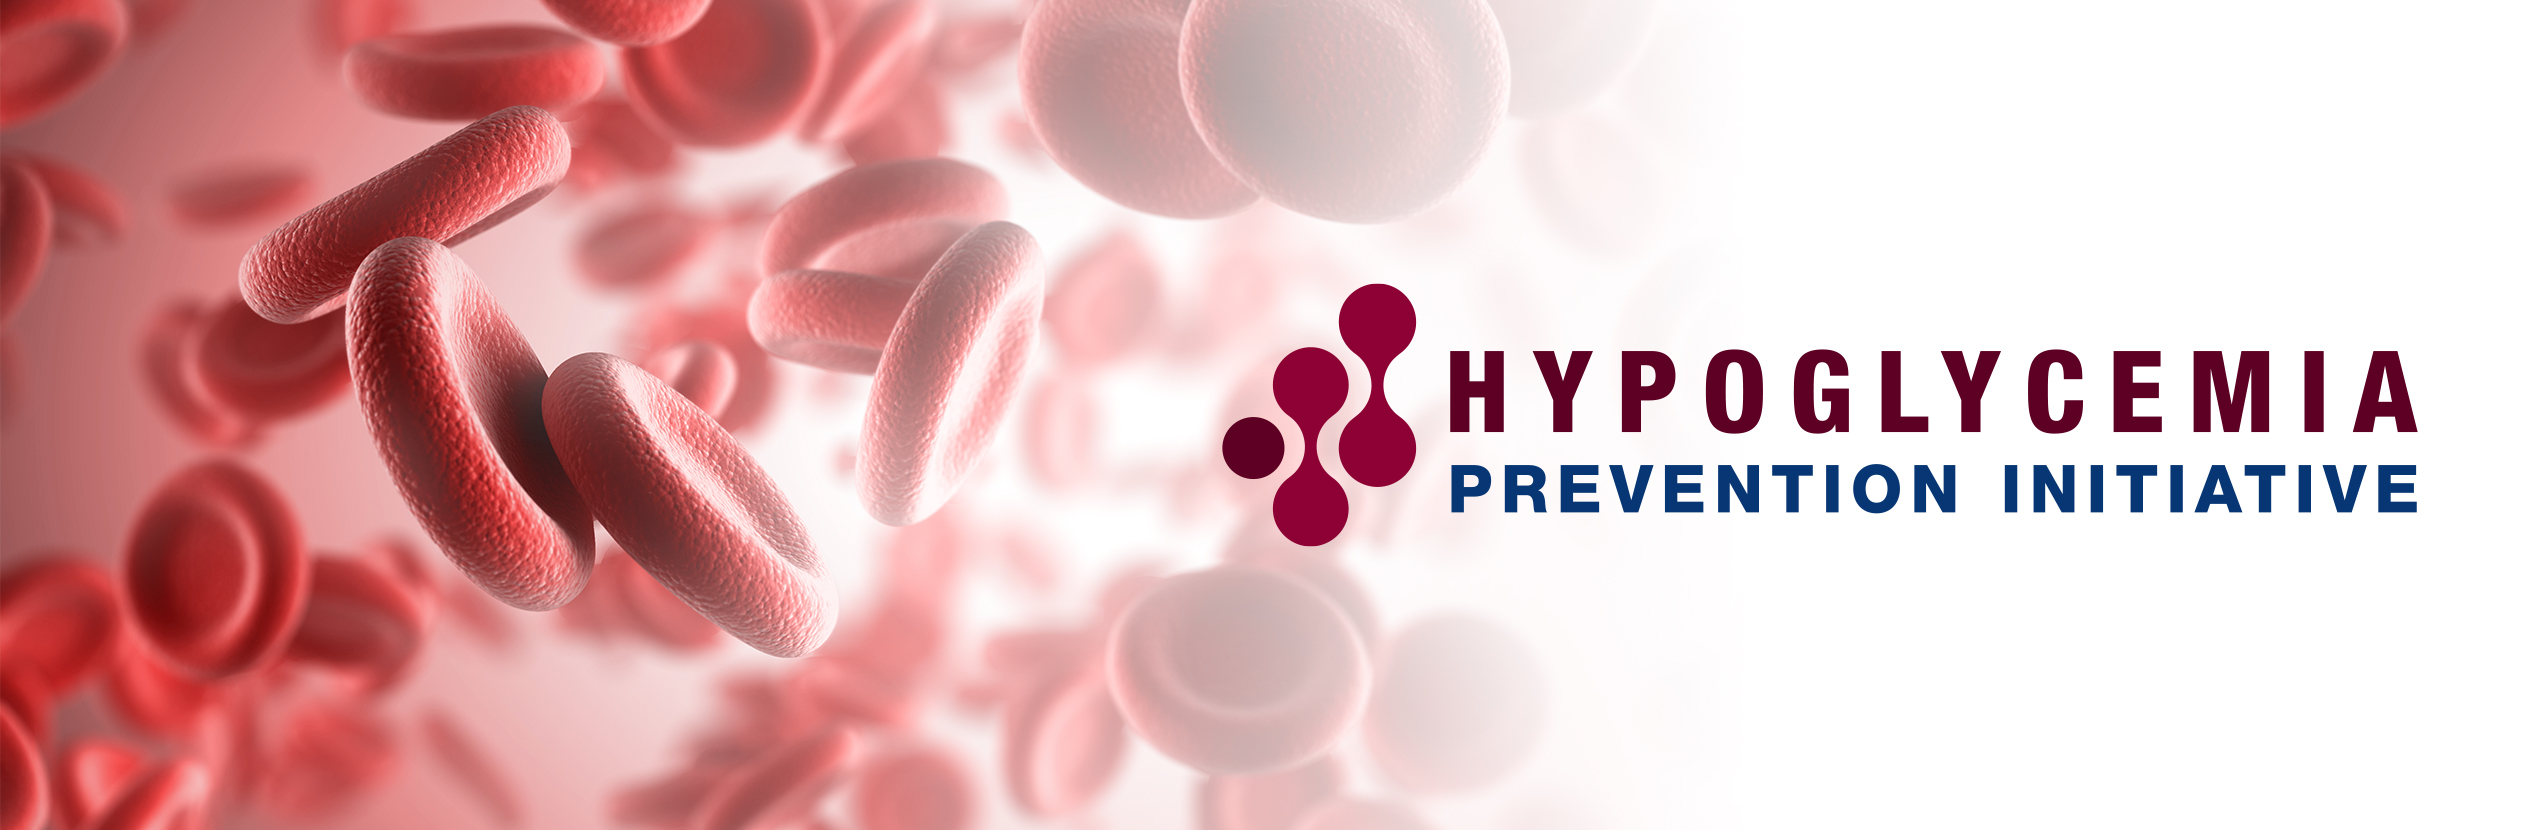 Hypoglycemia Prevention Initiative